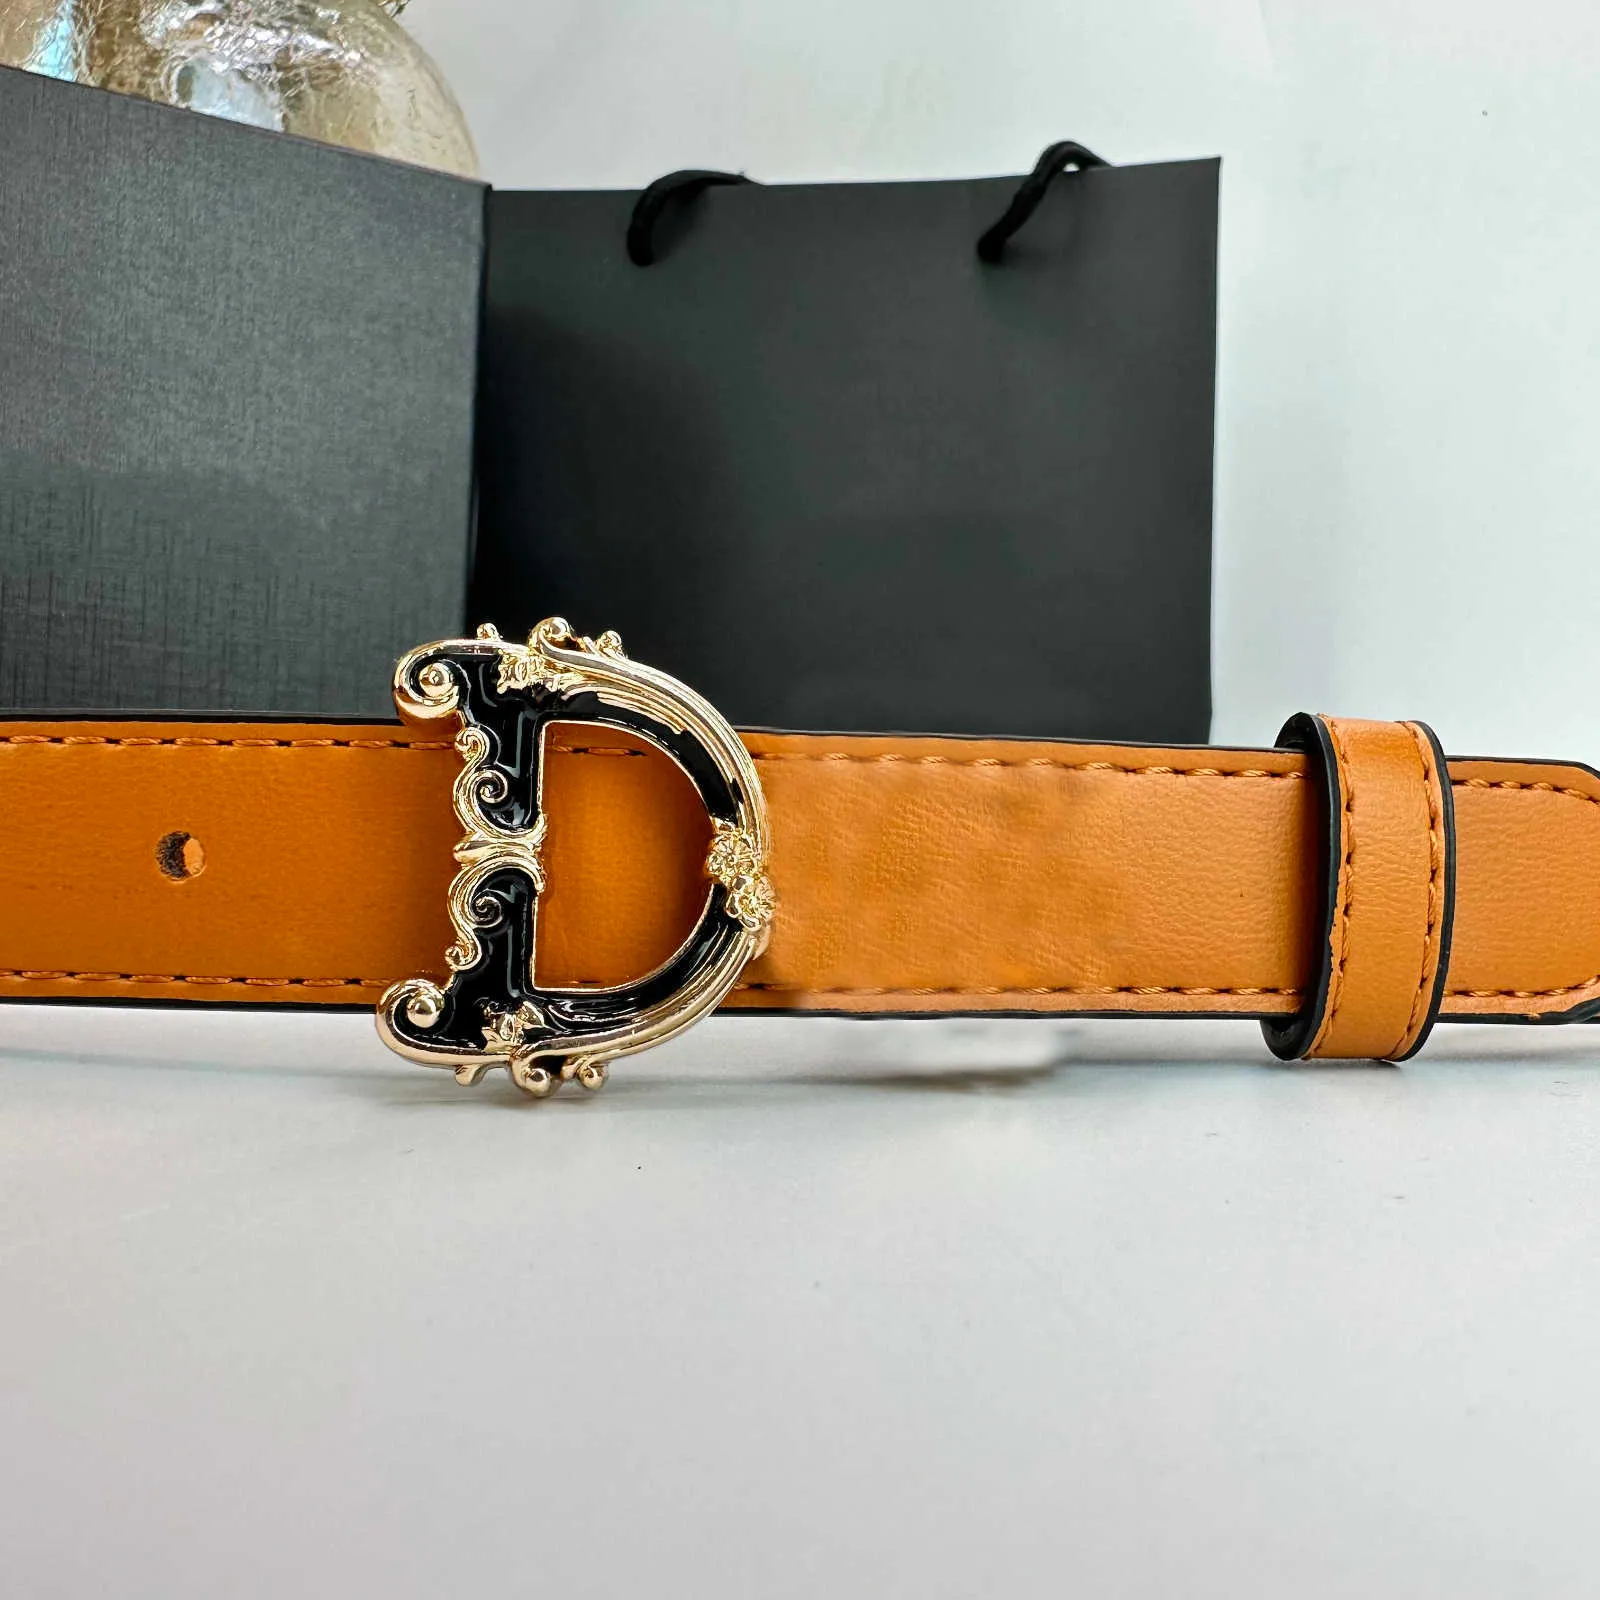 الفاخرة مصمم حزام أزياء الرجعية الرجال أحزمة جلدية النساء عرض 2.5 سنتيمتر إلكتروني السلس مشبك عالية الجودة حزام جلد البقر 8 ألوان